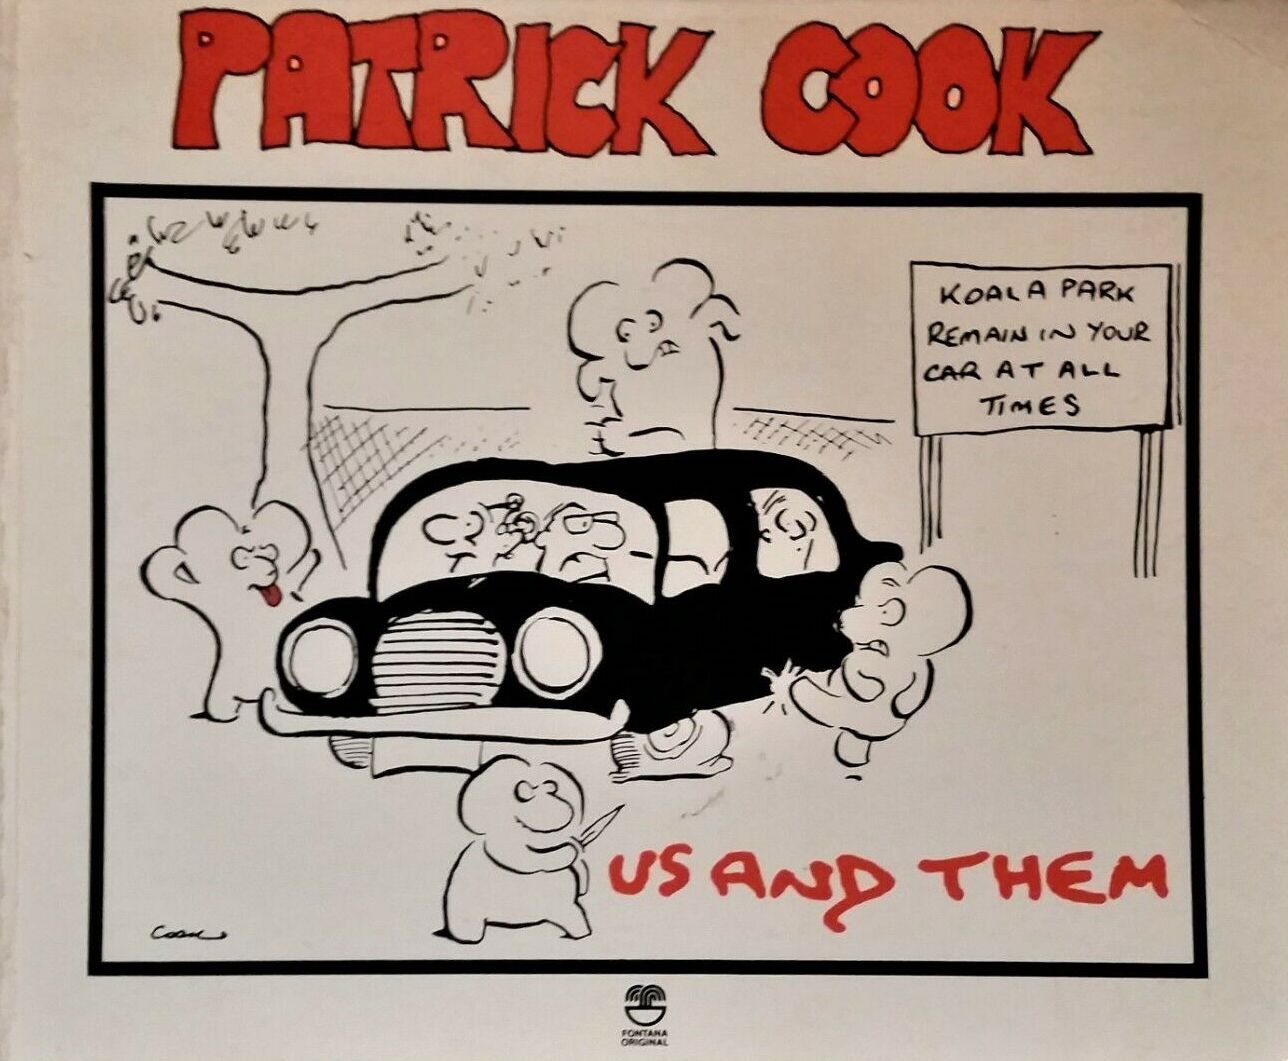 Patrick Cook cartoon